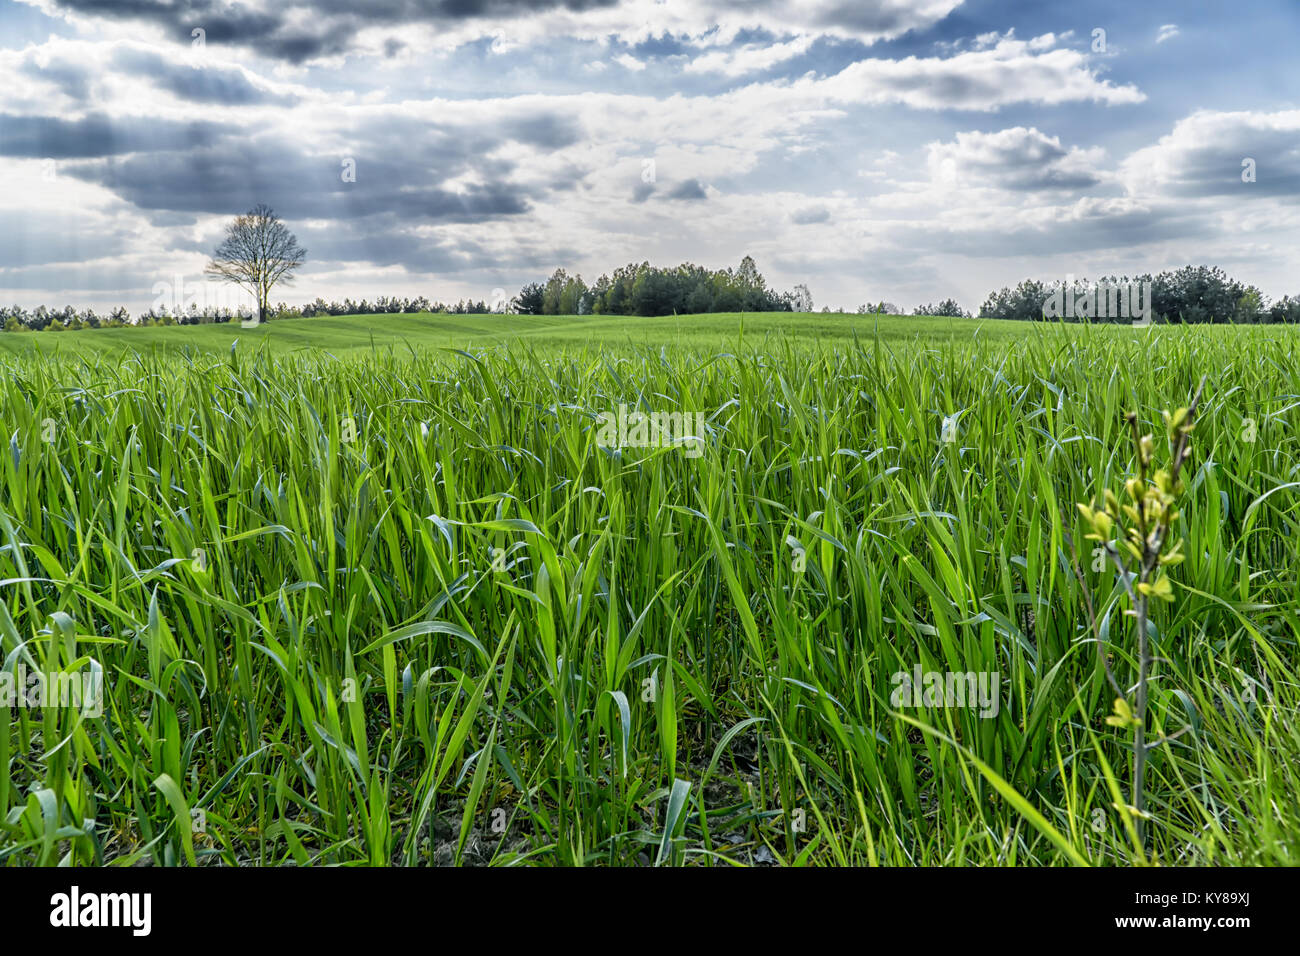 Grüne Gras Feld in hügeligem Gelände und der strahlend blaue Himmel mit Wolken. Gruppe od Bäume am Horizont. Feder natürlichen Hintergrund. Stockfoto